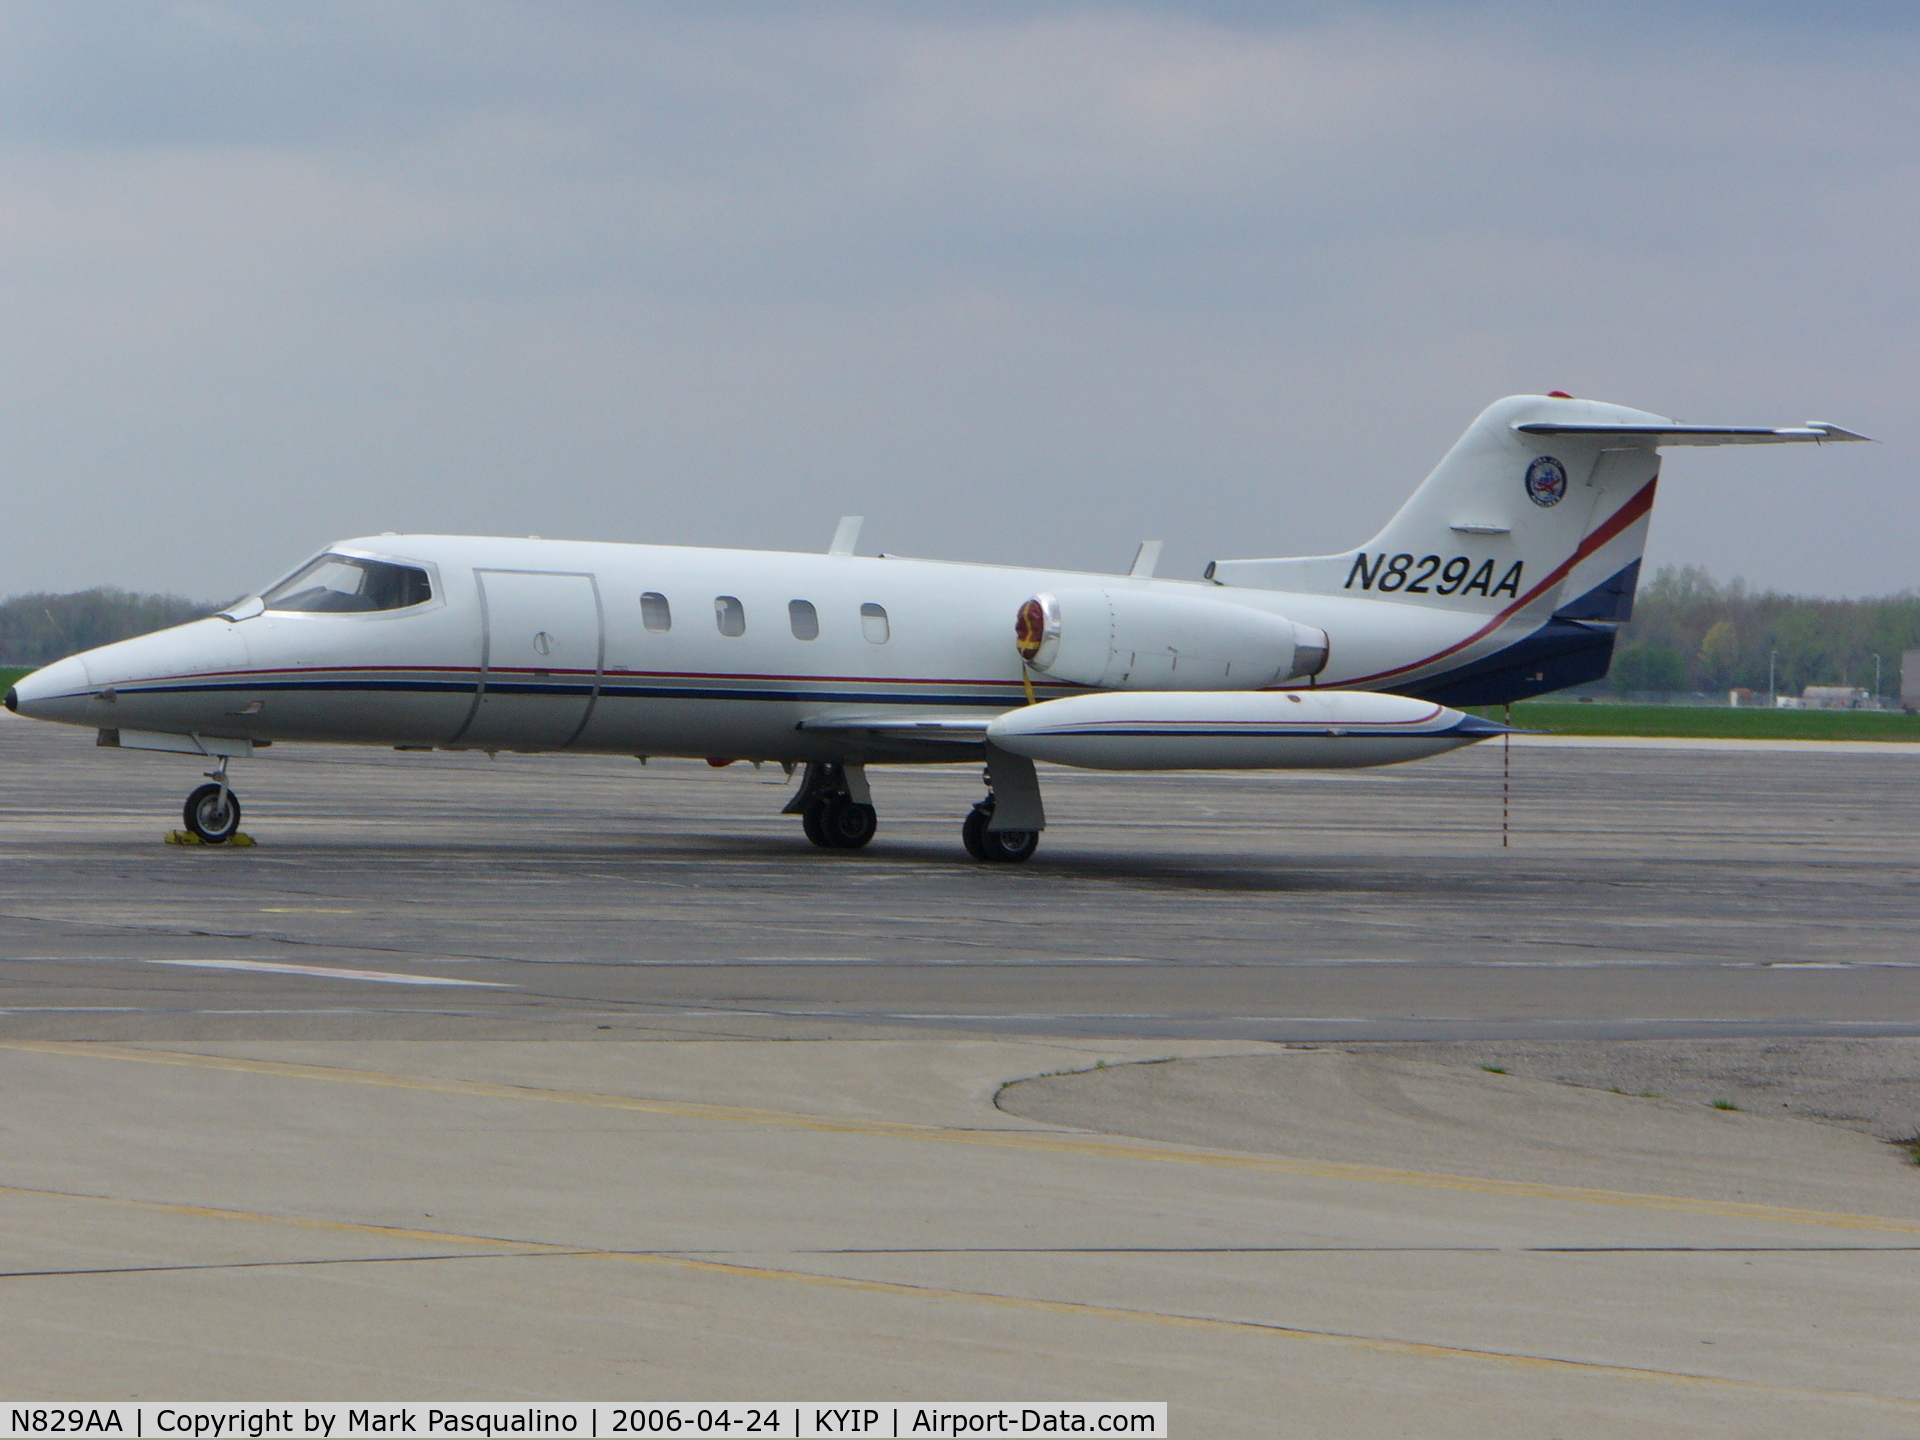 N829AA, Gates Learjet 25B C/N 100, Lear Jet 25B